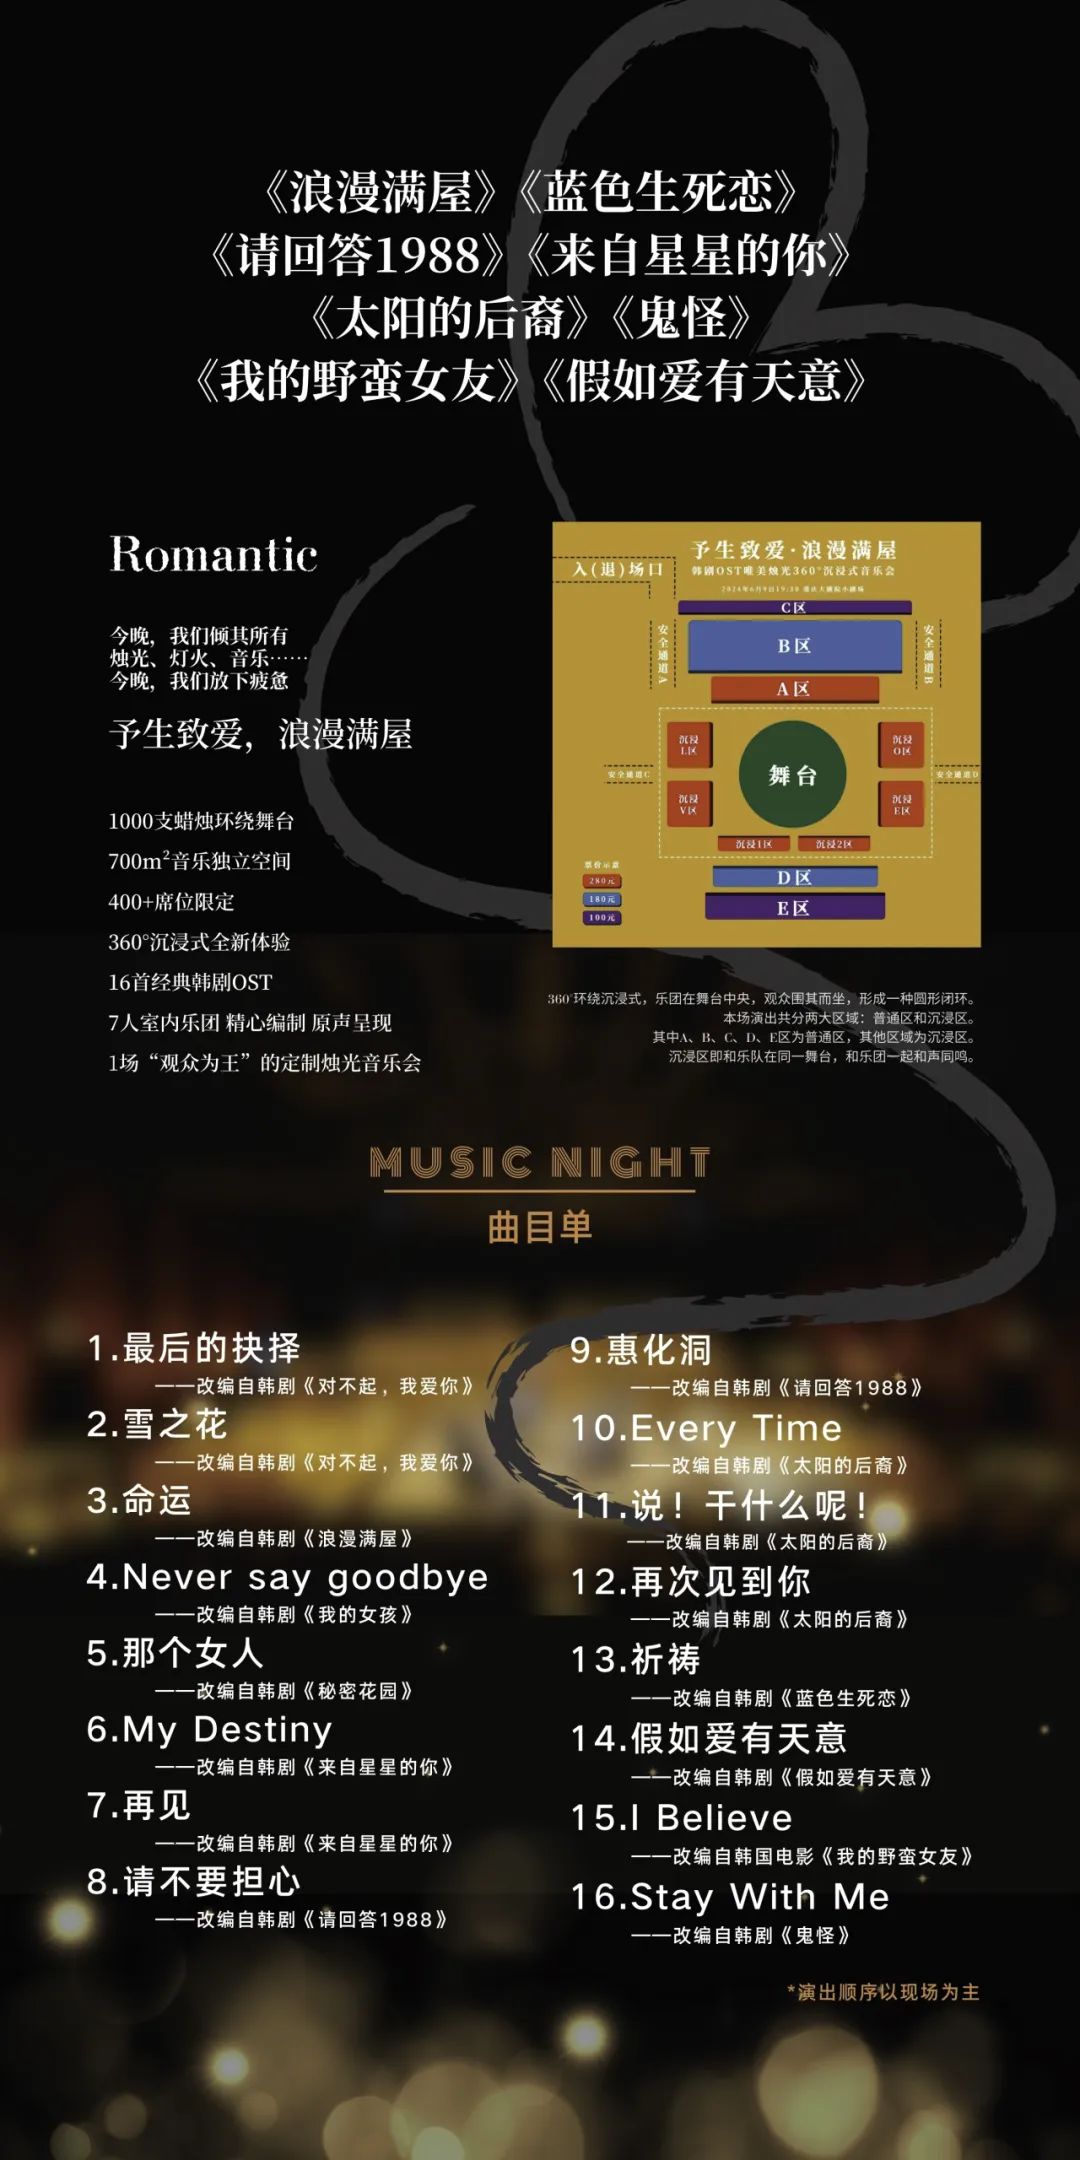 【曲目单】520卡农·世界经典名曲浪漫唯美烛光音乐会